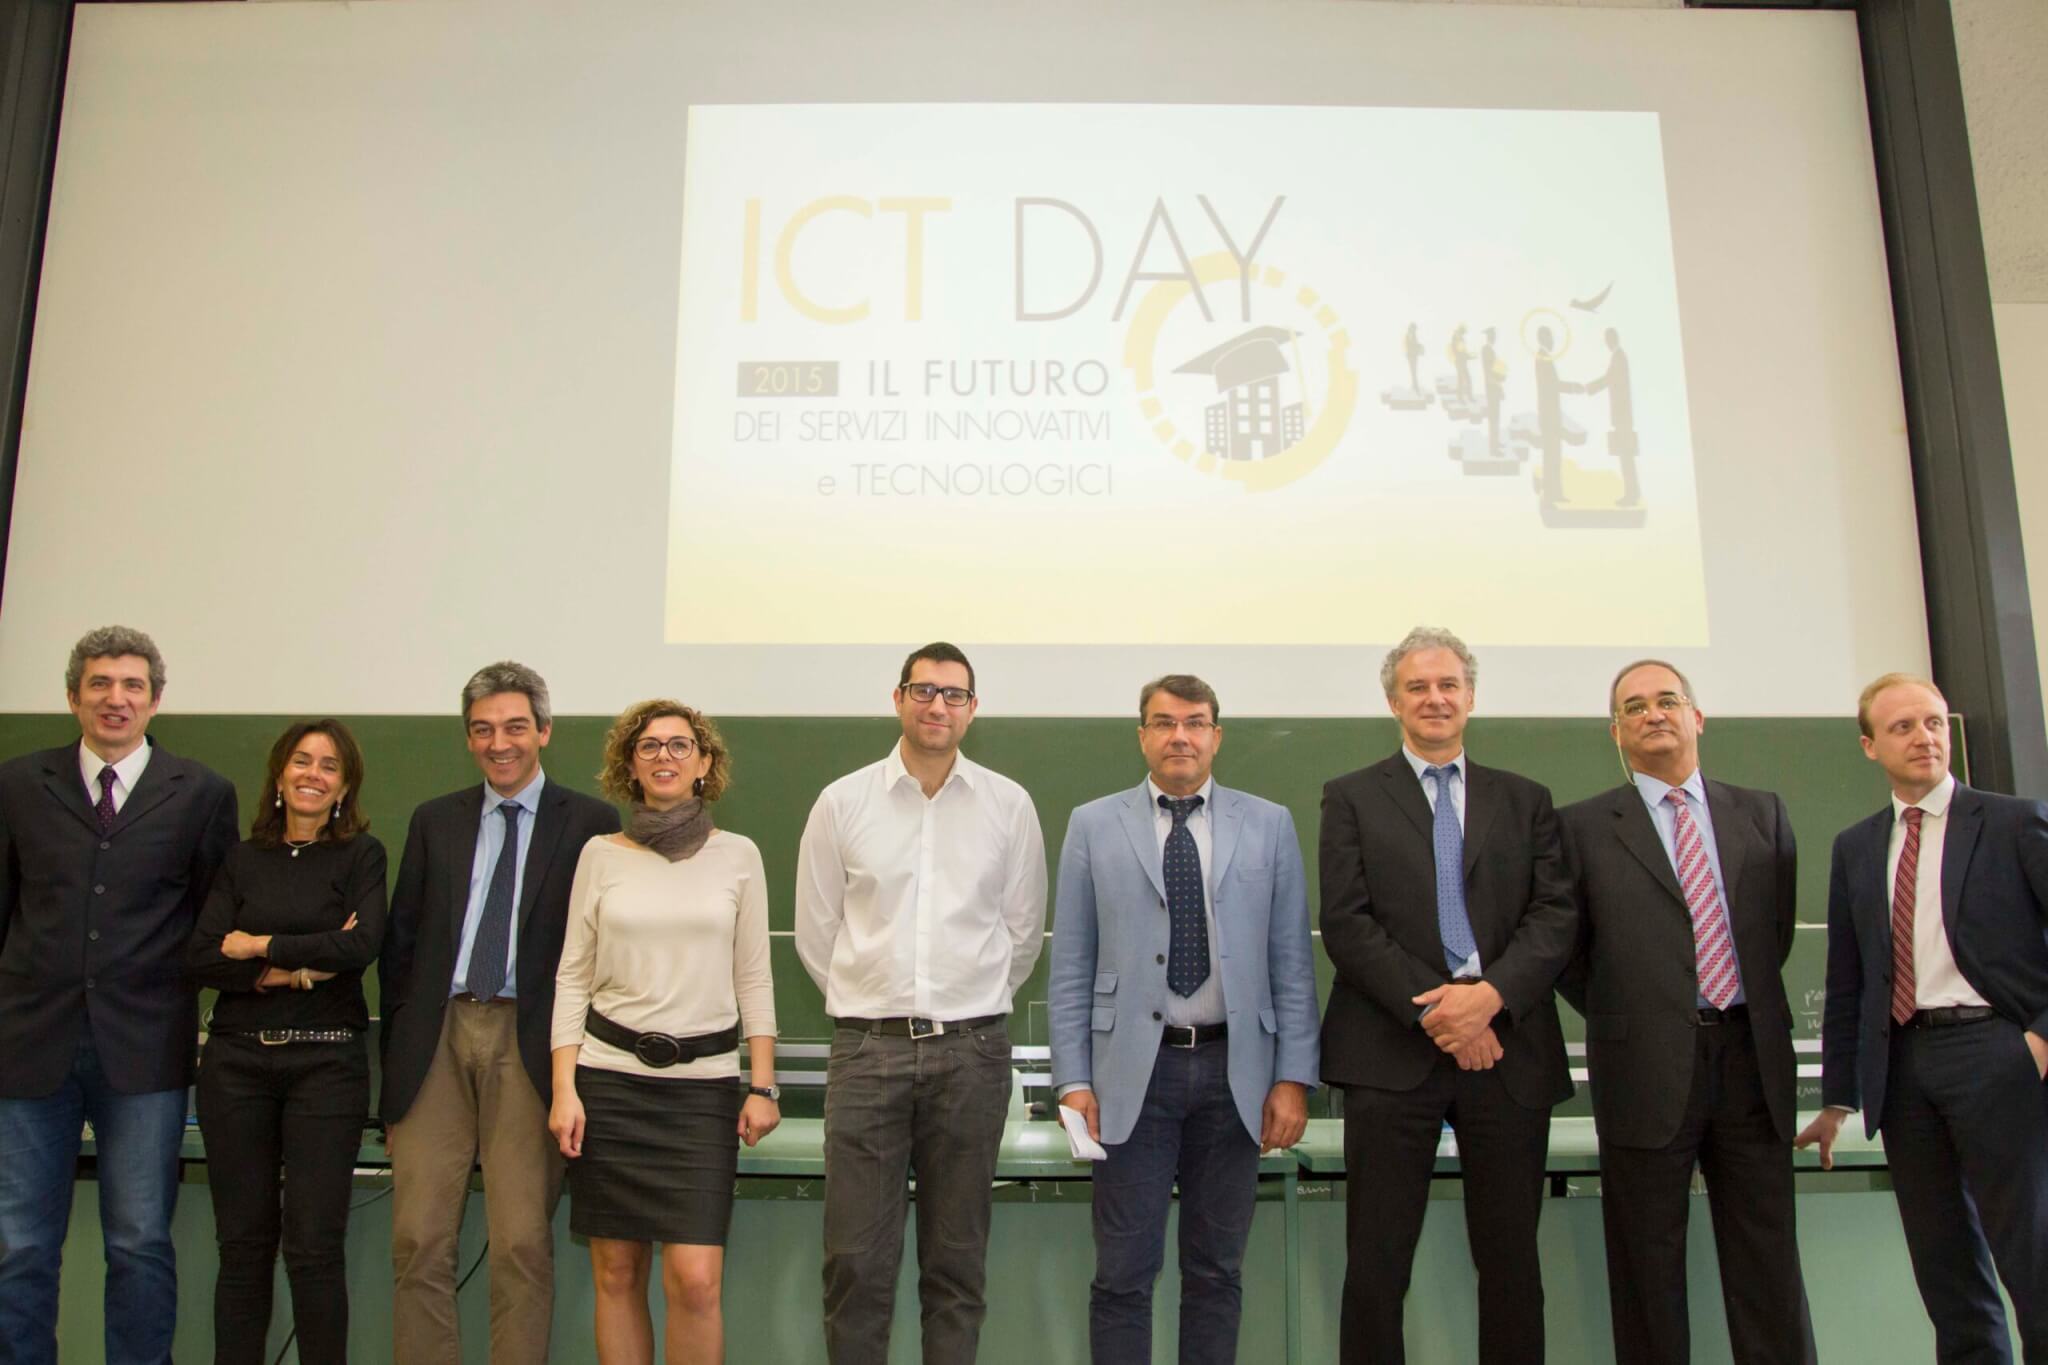 ICT DAY 2015 articolo